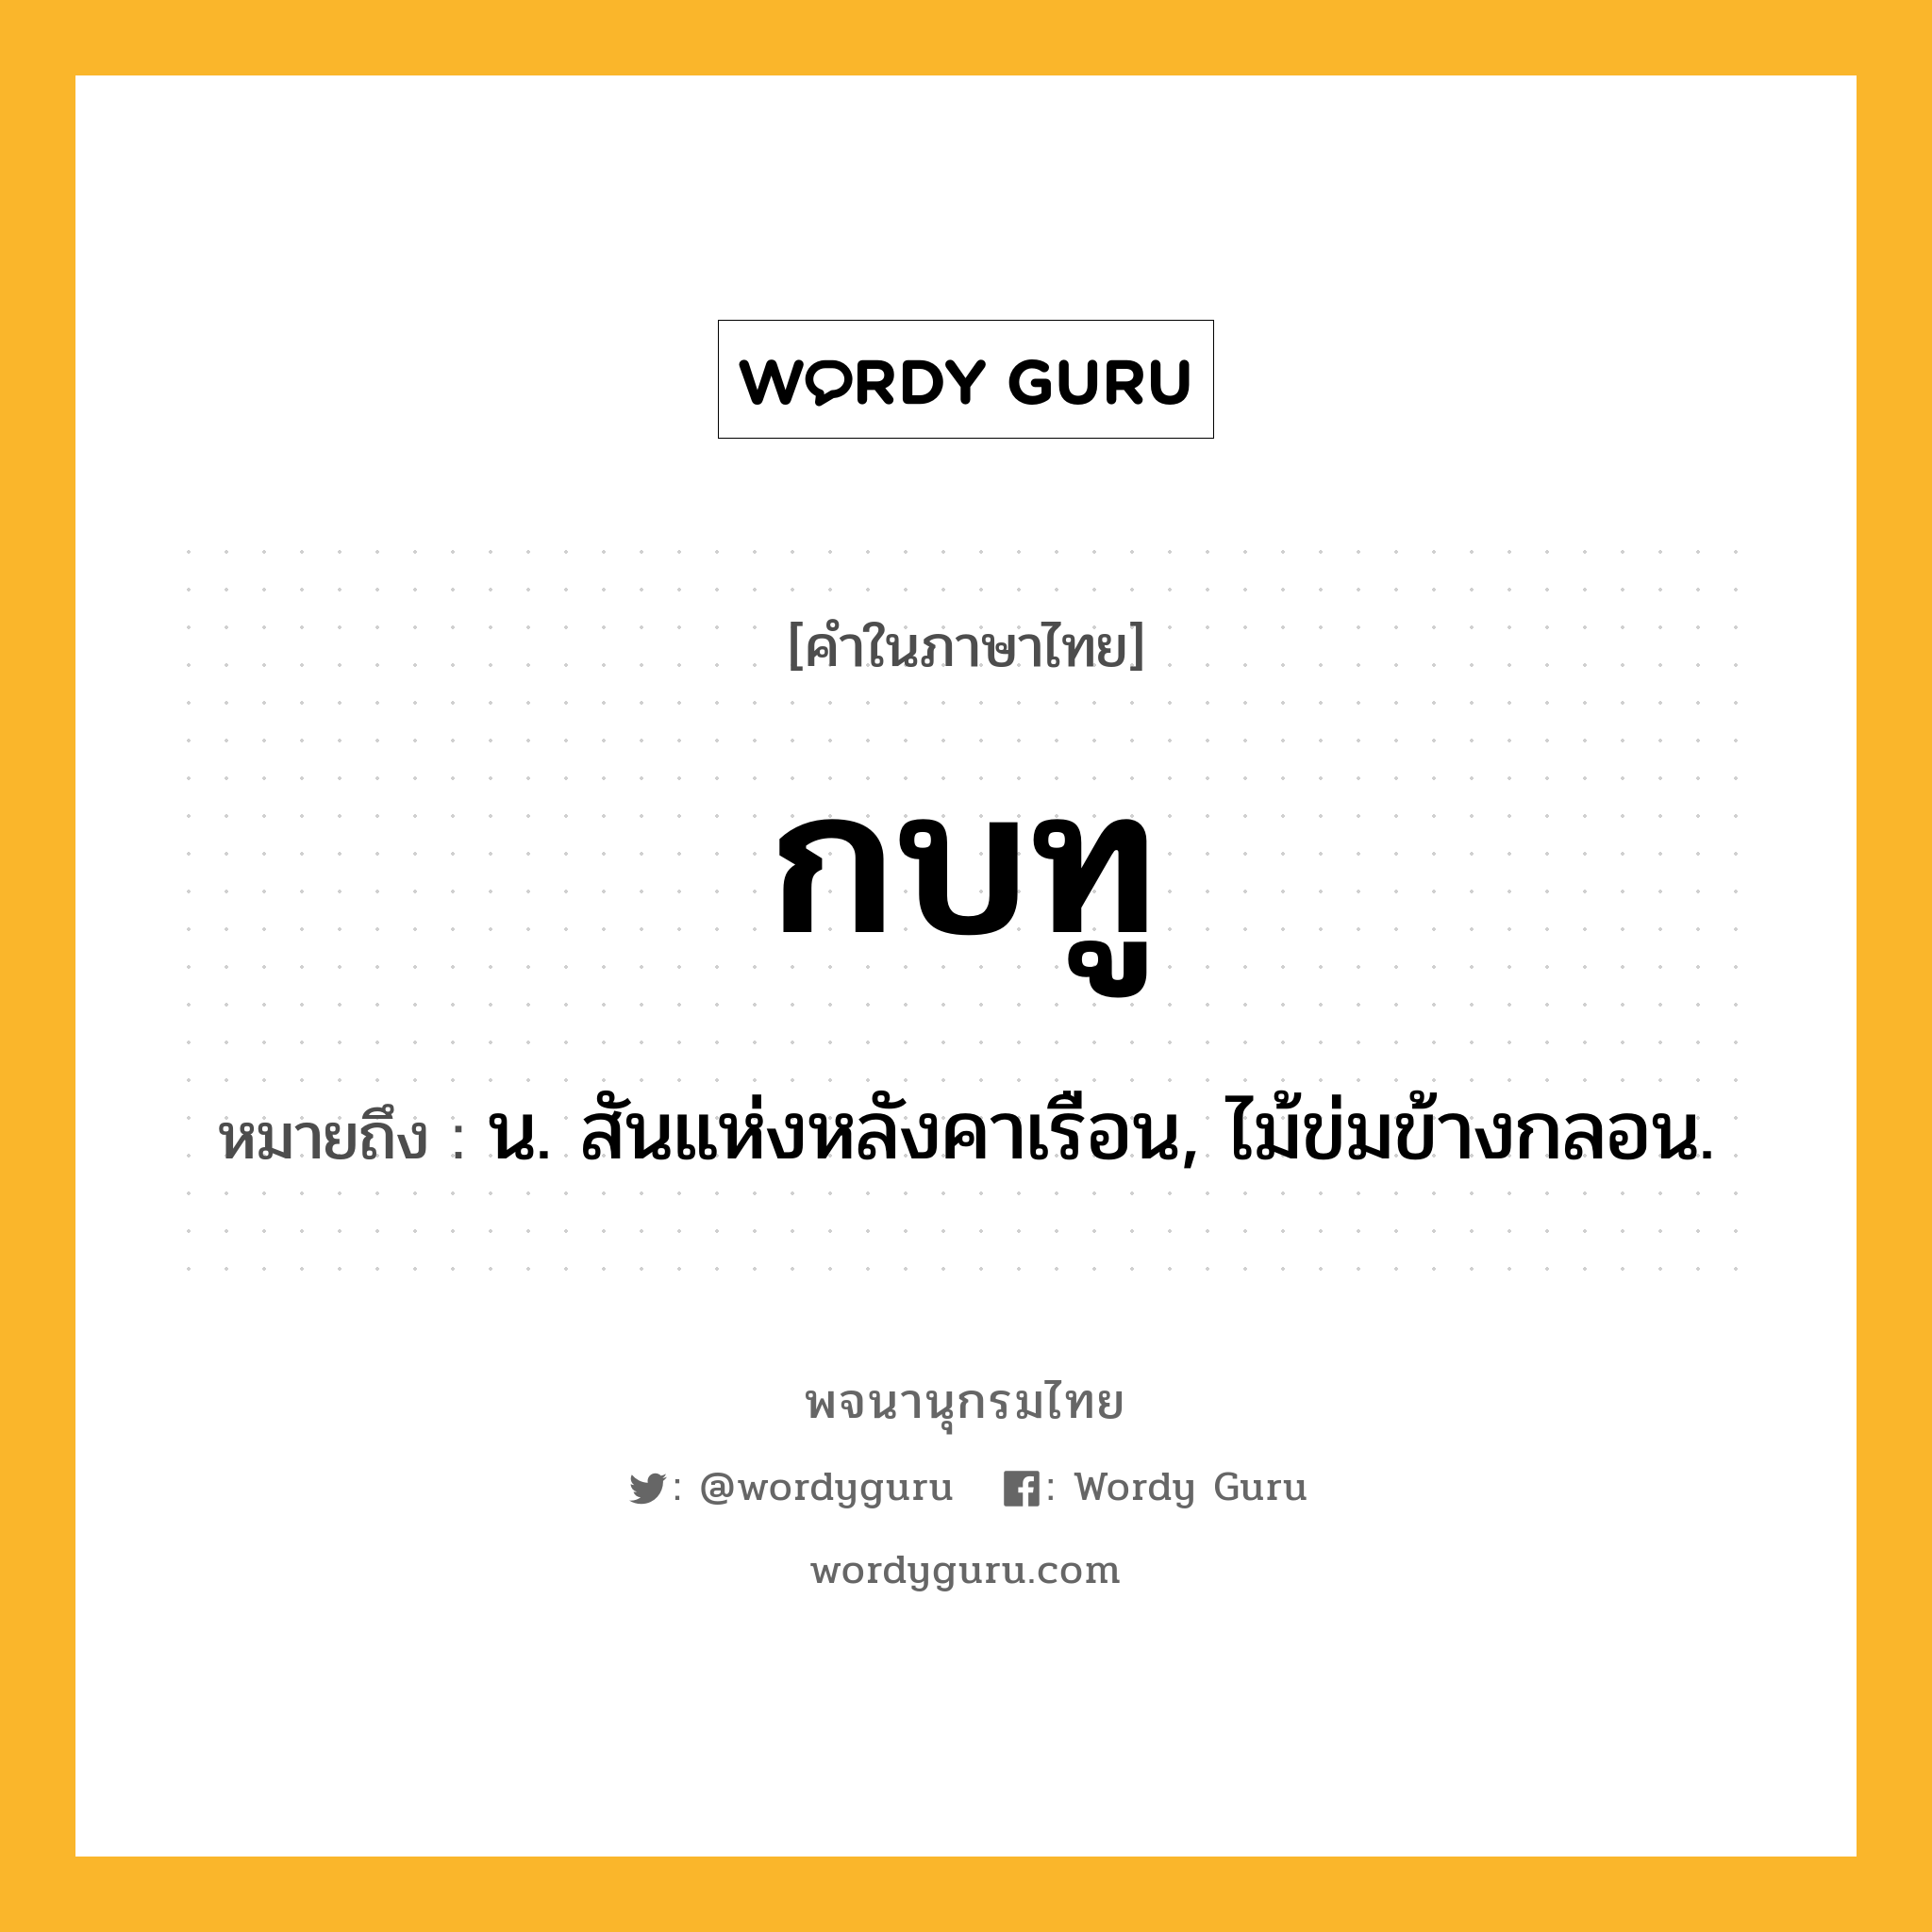 กบทู หมายถึงอะไร?, คำในภาษาไทย กบทู หมายถึง น. สันแห่งหลังคาเรือน, ไม้ข่มข้างกลอน.